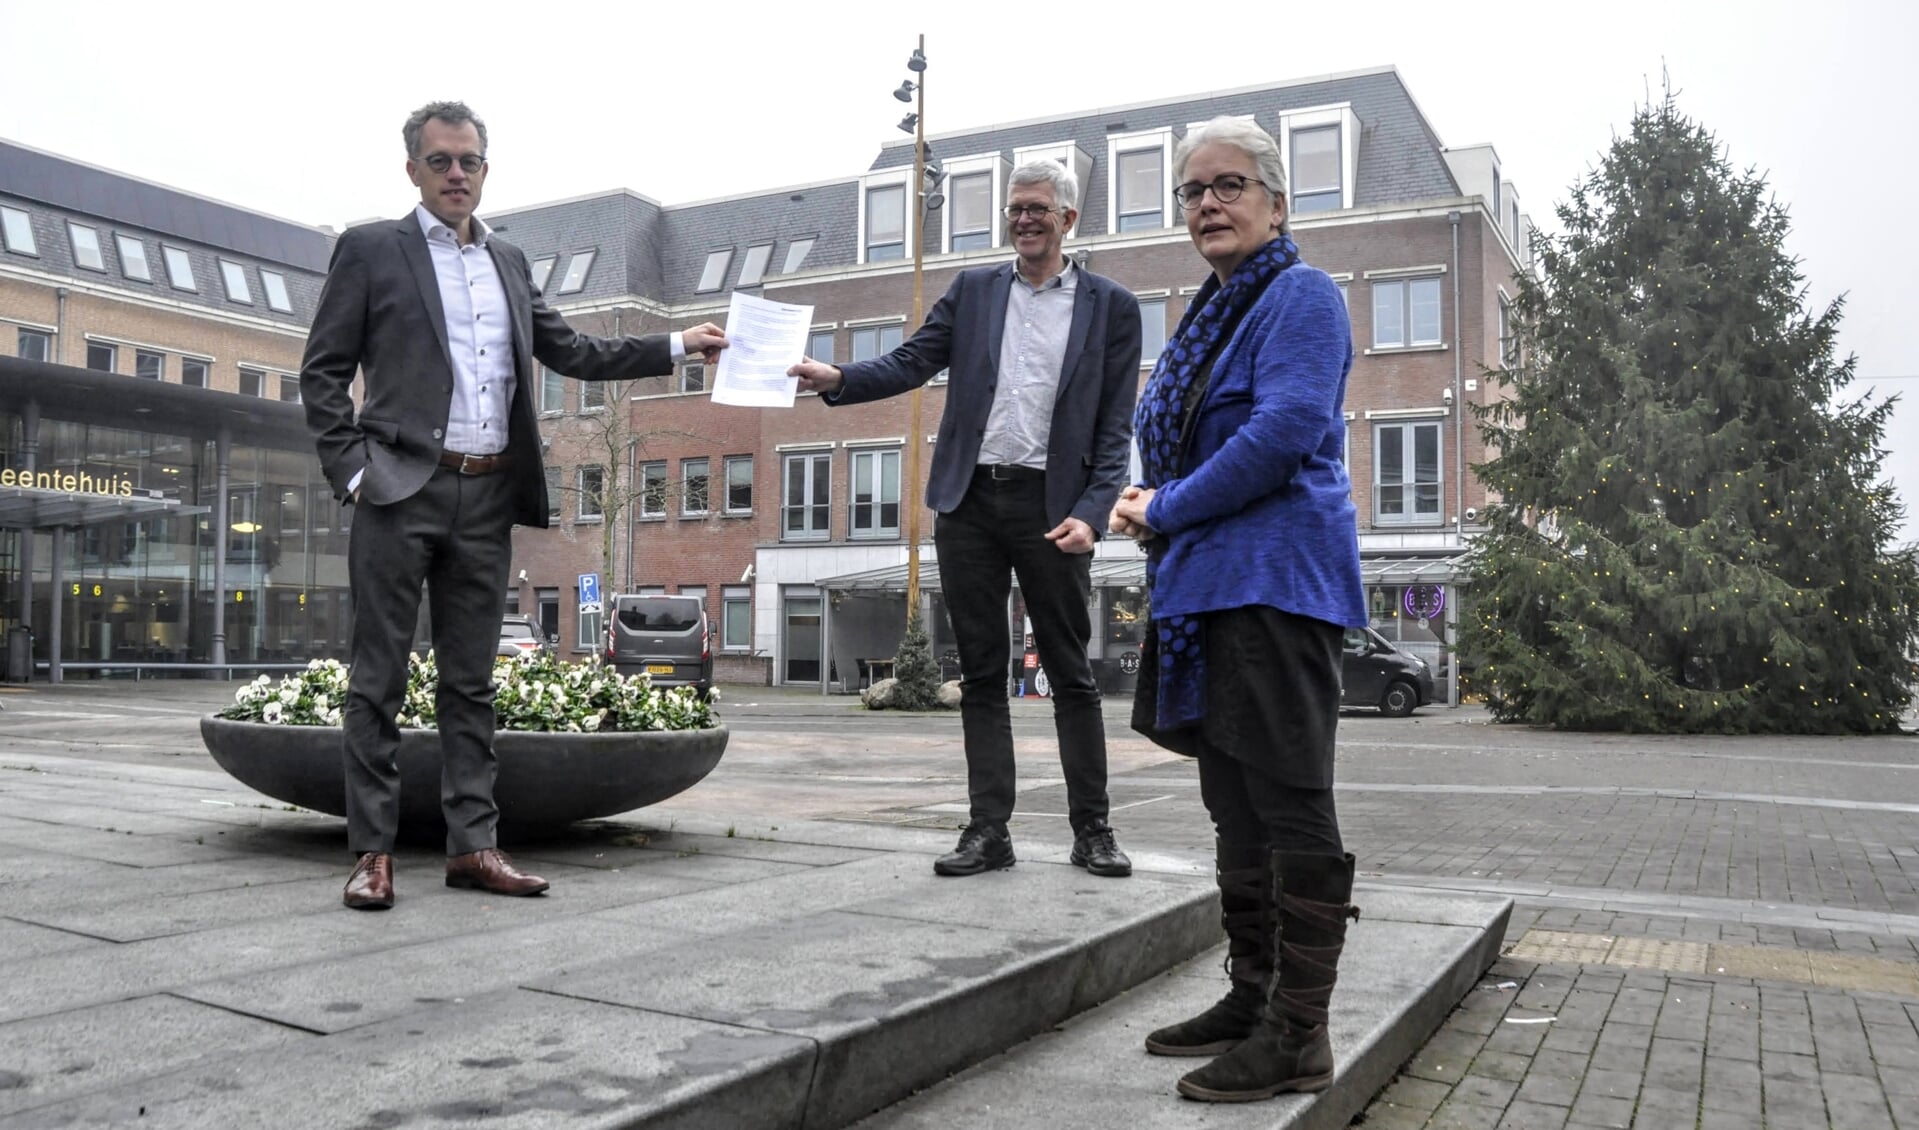 Raadsleden Henry Buitenhuis en Wilma Heijkoop (ChristenUnie) overhandigden woensdag het document over waardig ouder worden aan wethouder Hans van Daalen.